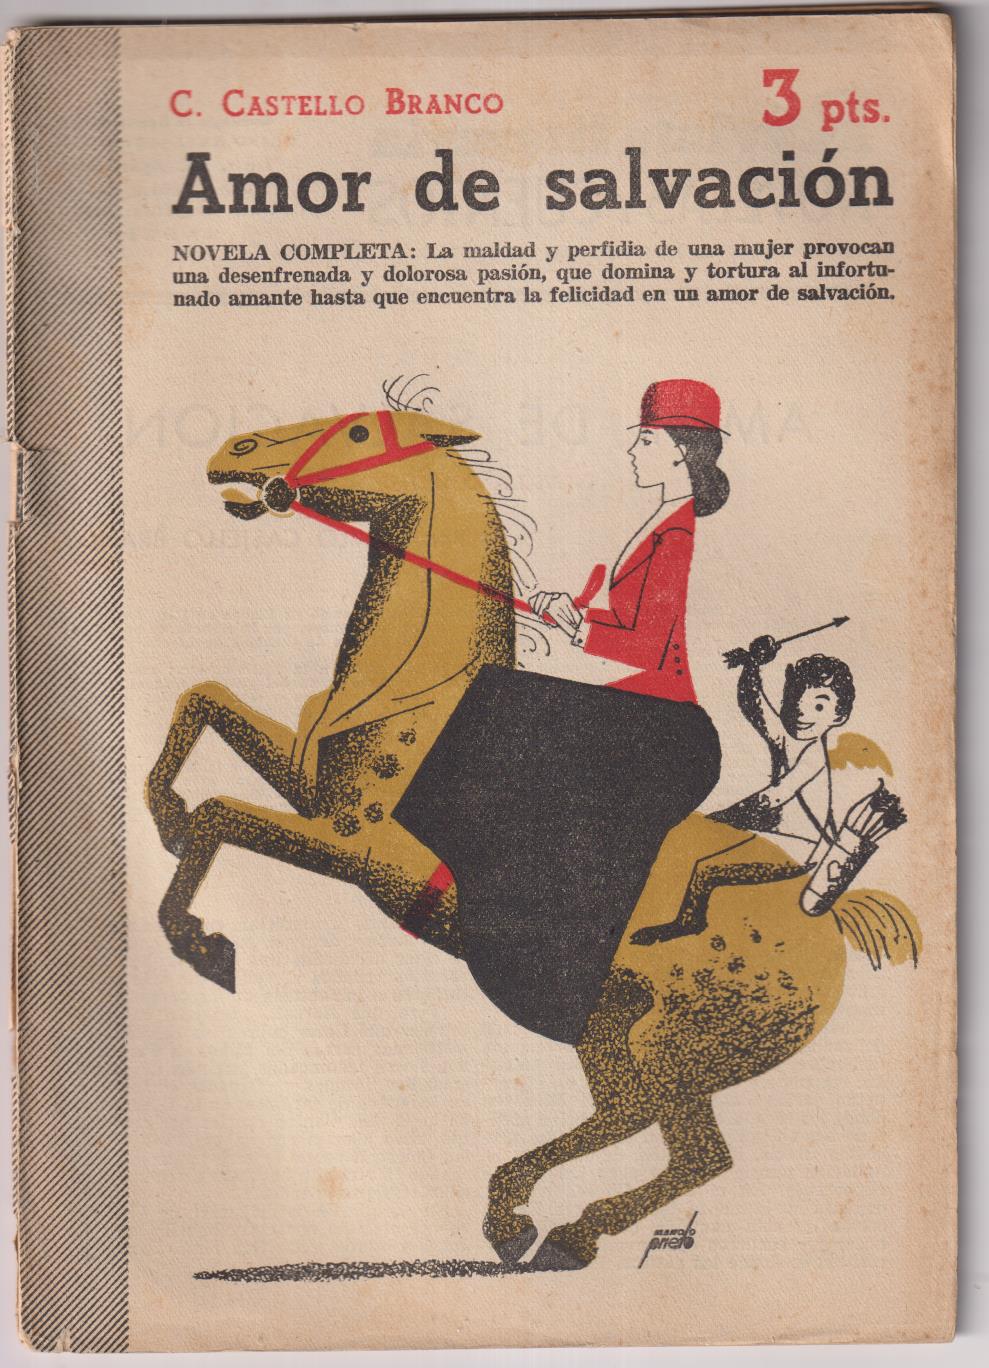 Revista Literaria Novelas y Cuentos nº 1164. C. Castello Branco . Amor de salvación, Año 1953